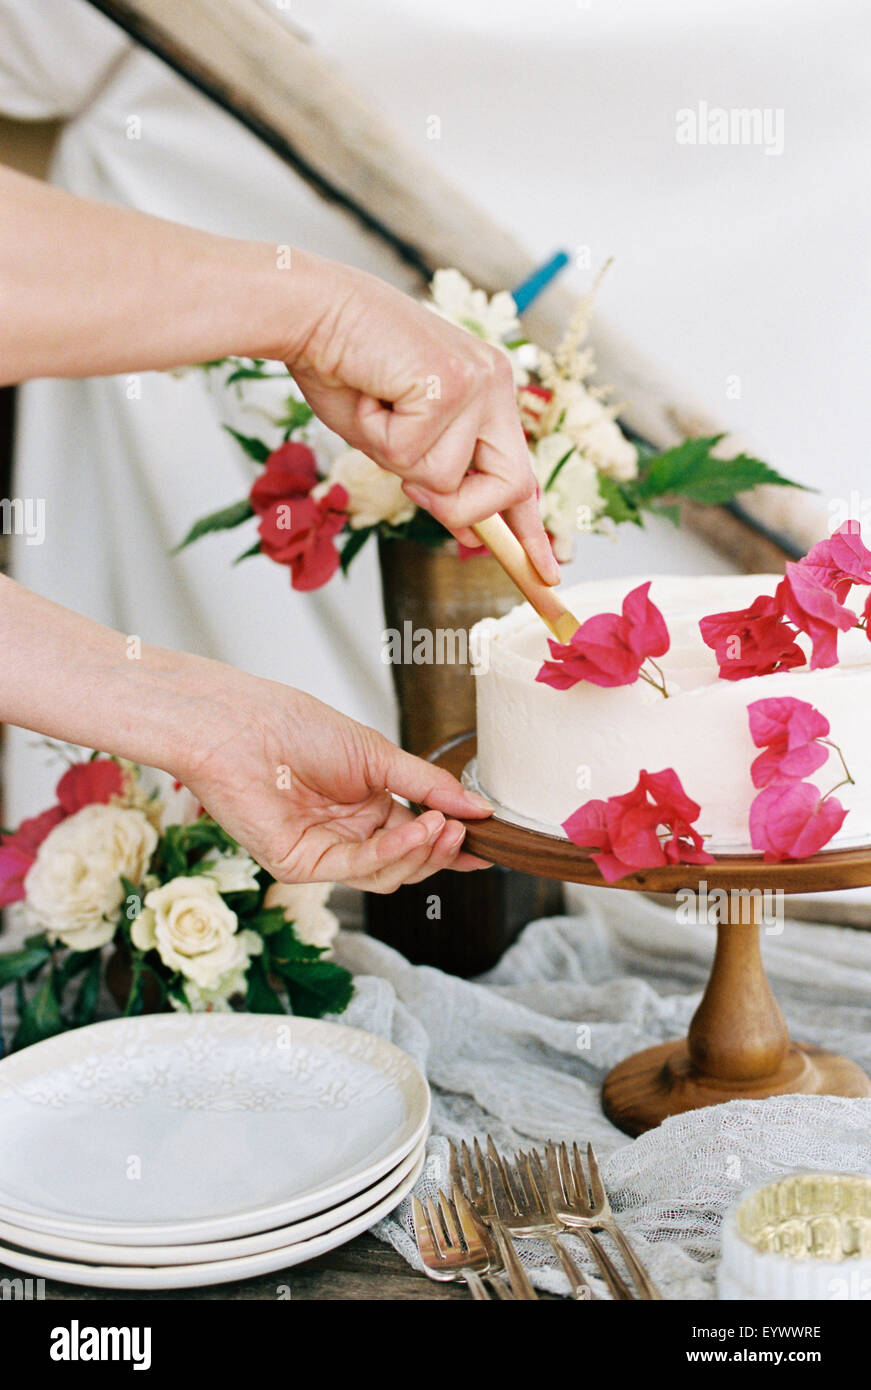 La donna il taglio di una torta con la glassa bianca Foto Stock